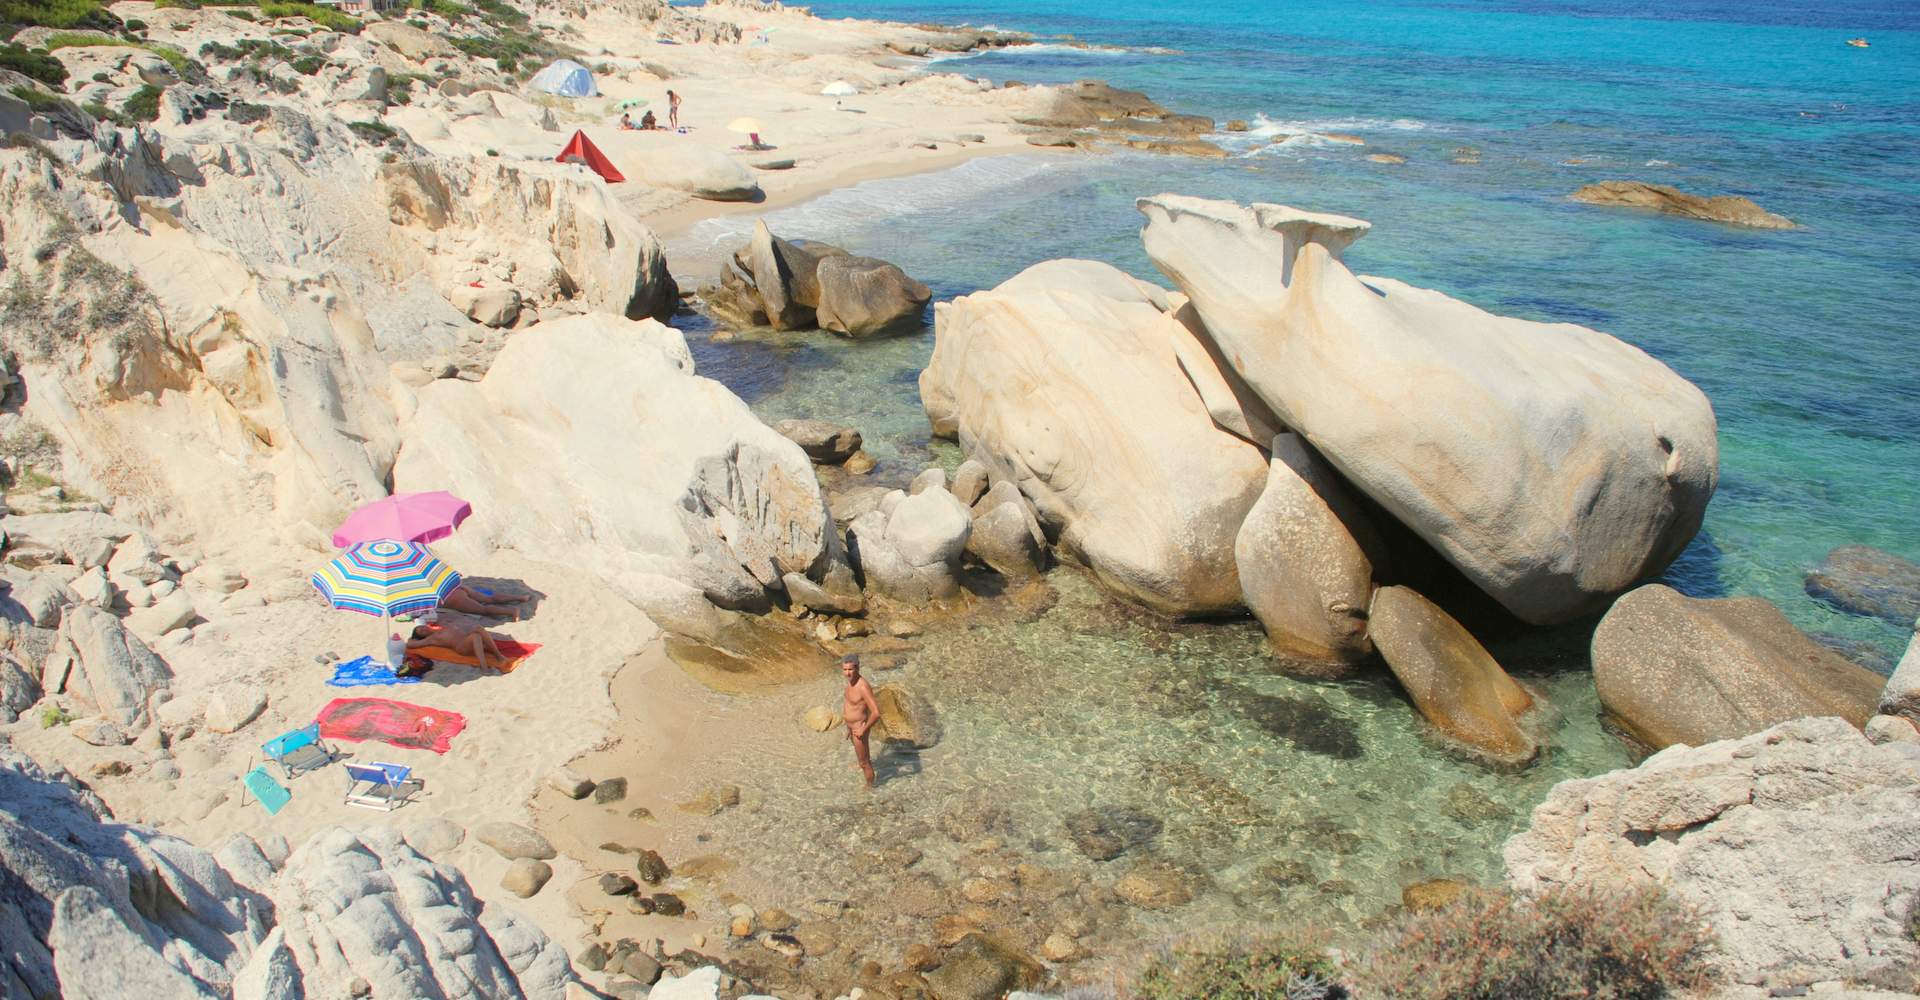 North Platanitsi nudists beach, Halkidiki, Greece